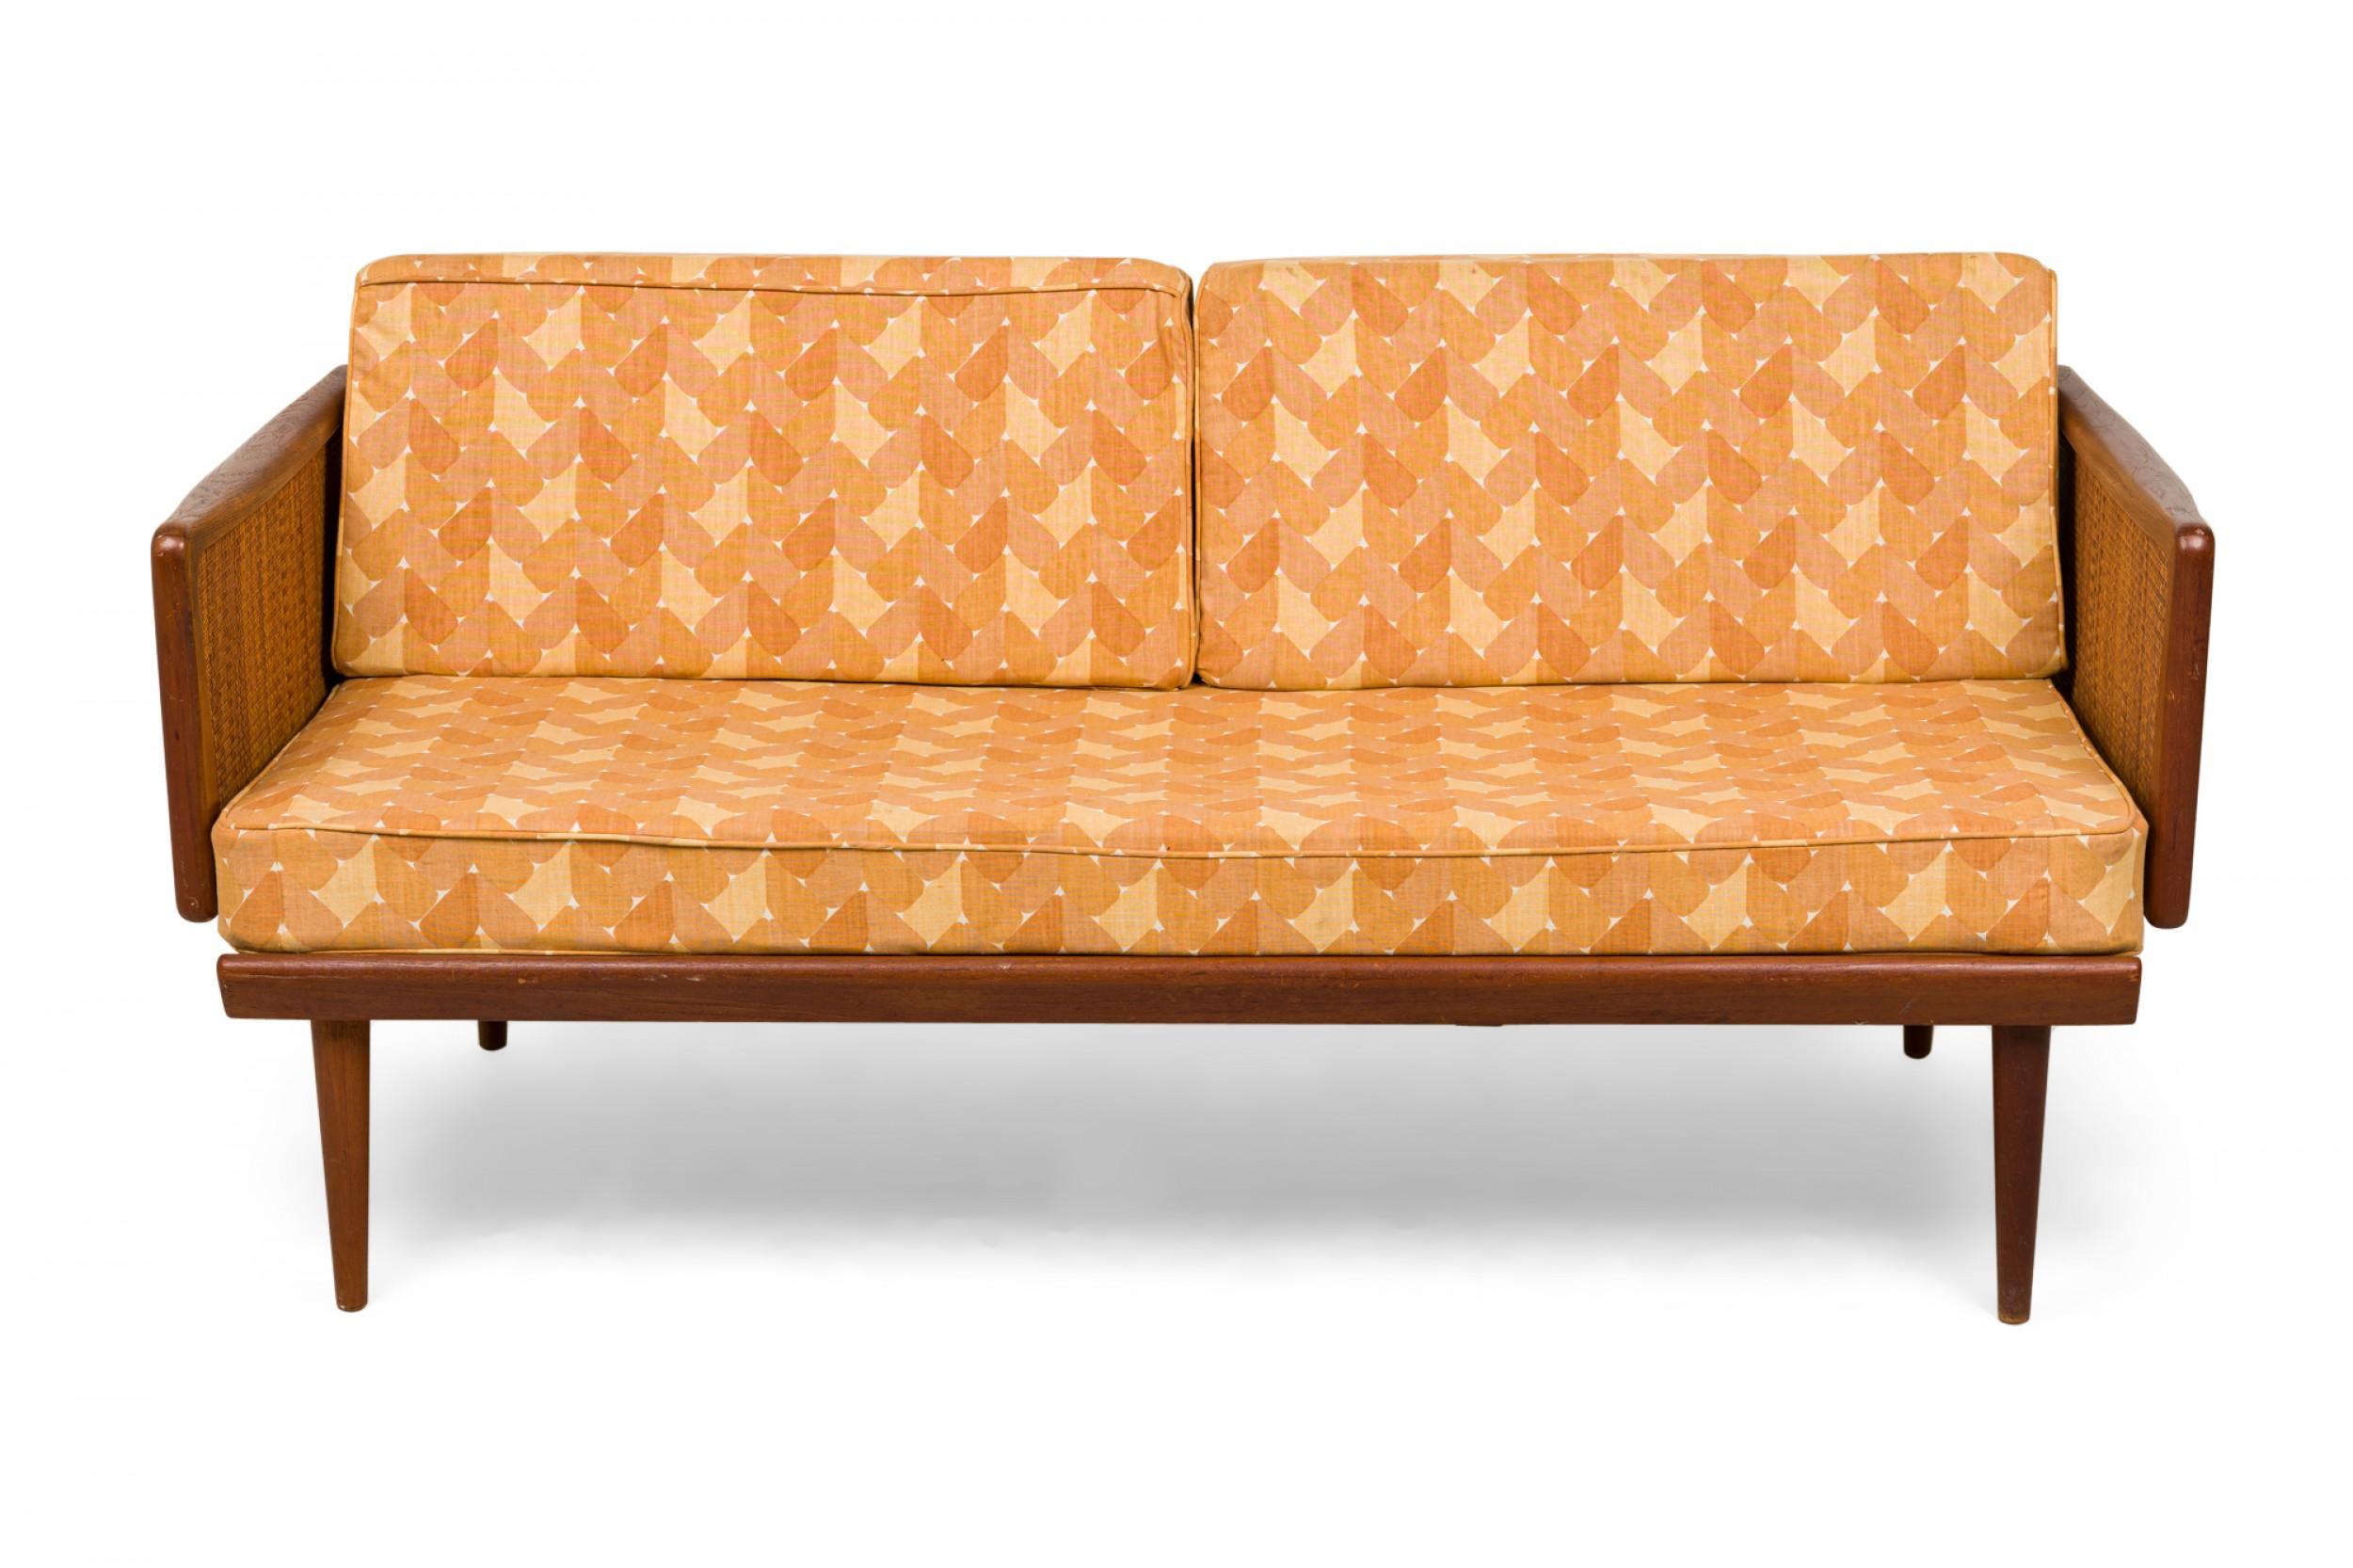 Canapé-lit extensible danois du milieu du siècle, avec une structure en bois de teck, des côtés cannelés, un coussin d'assise solide et deux coussins de dossier amovibles en forme de coin dans un revêtement à motifs or clair et or foncé, avec des